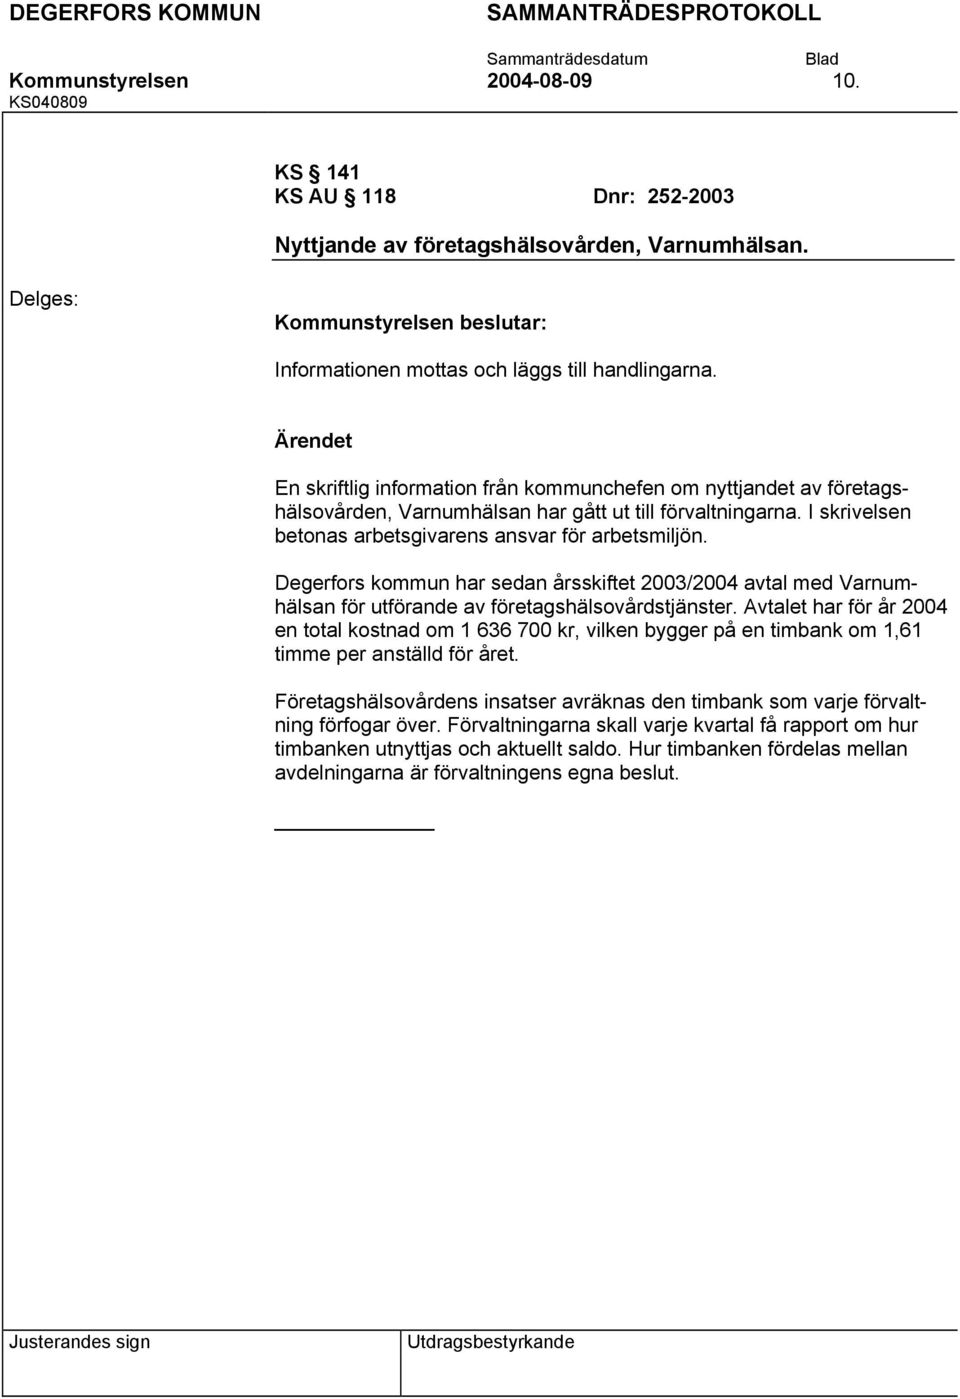 Degerfors kommun har sedan årsskiftet 2003/2004 avtal med Varnumhälsan för utförande av företagshälsovårdstjänster.